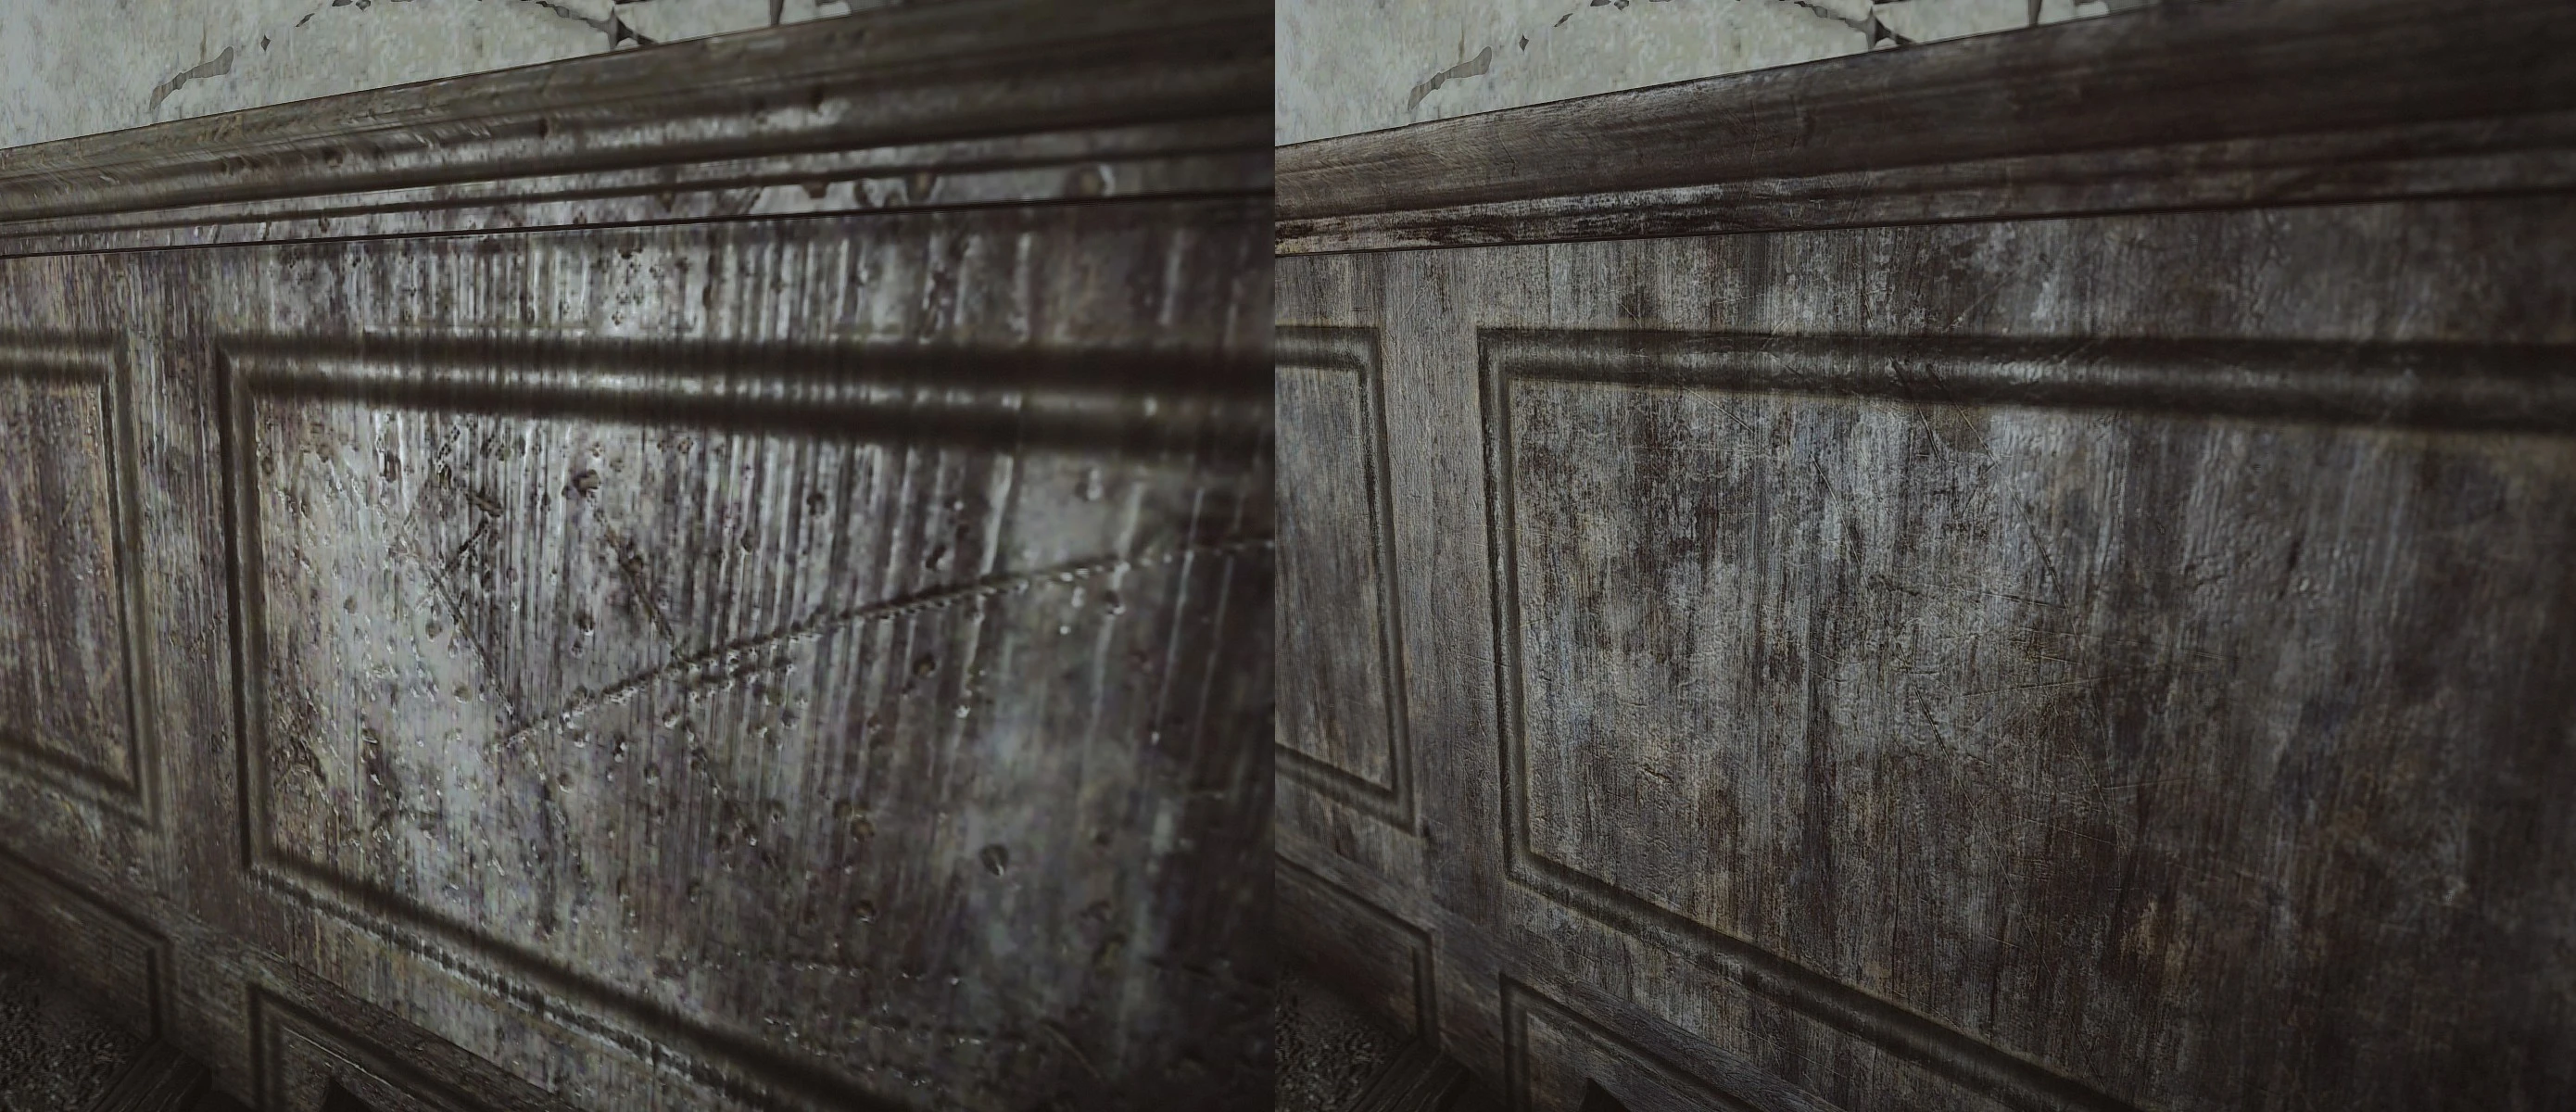 Fallout 4 hd texture pack сравнение фото 13